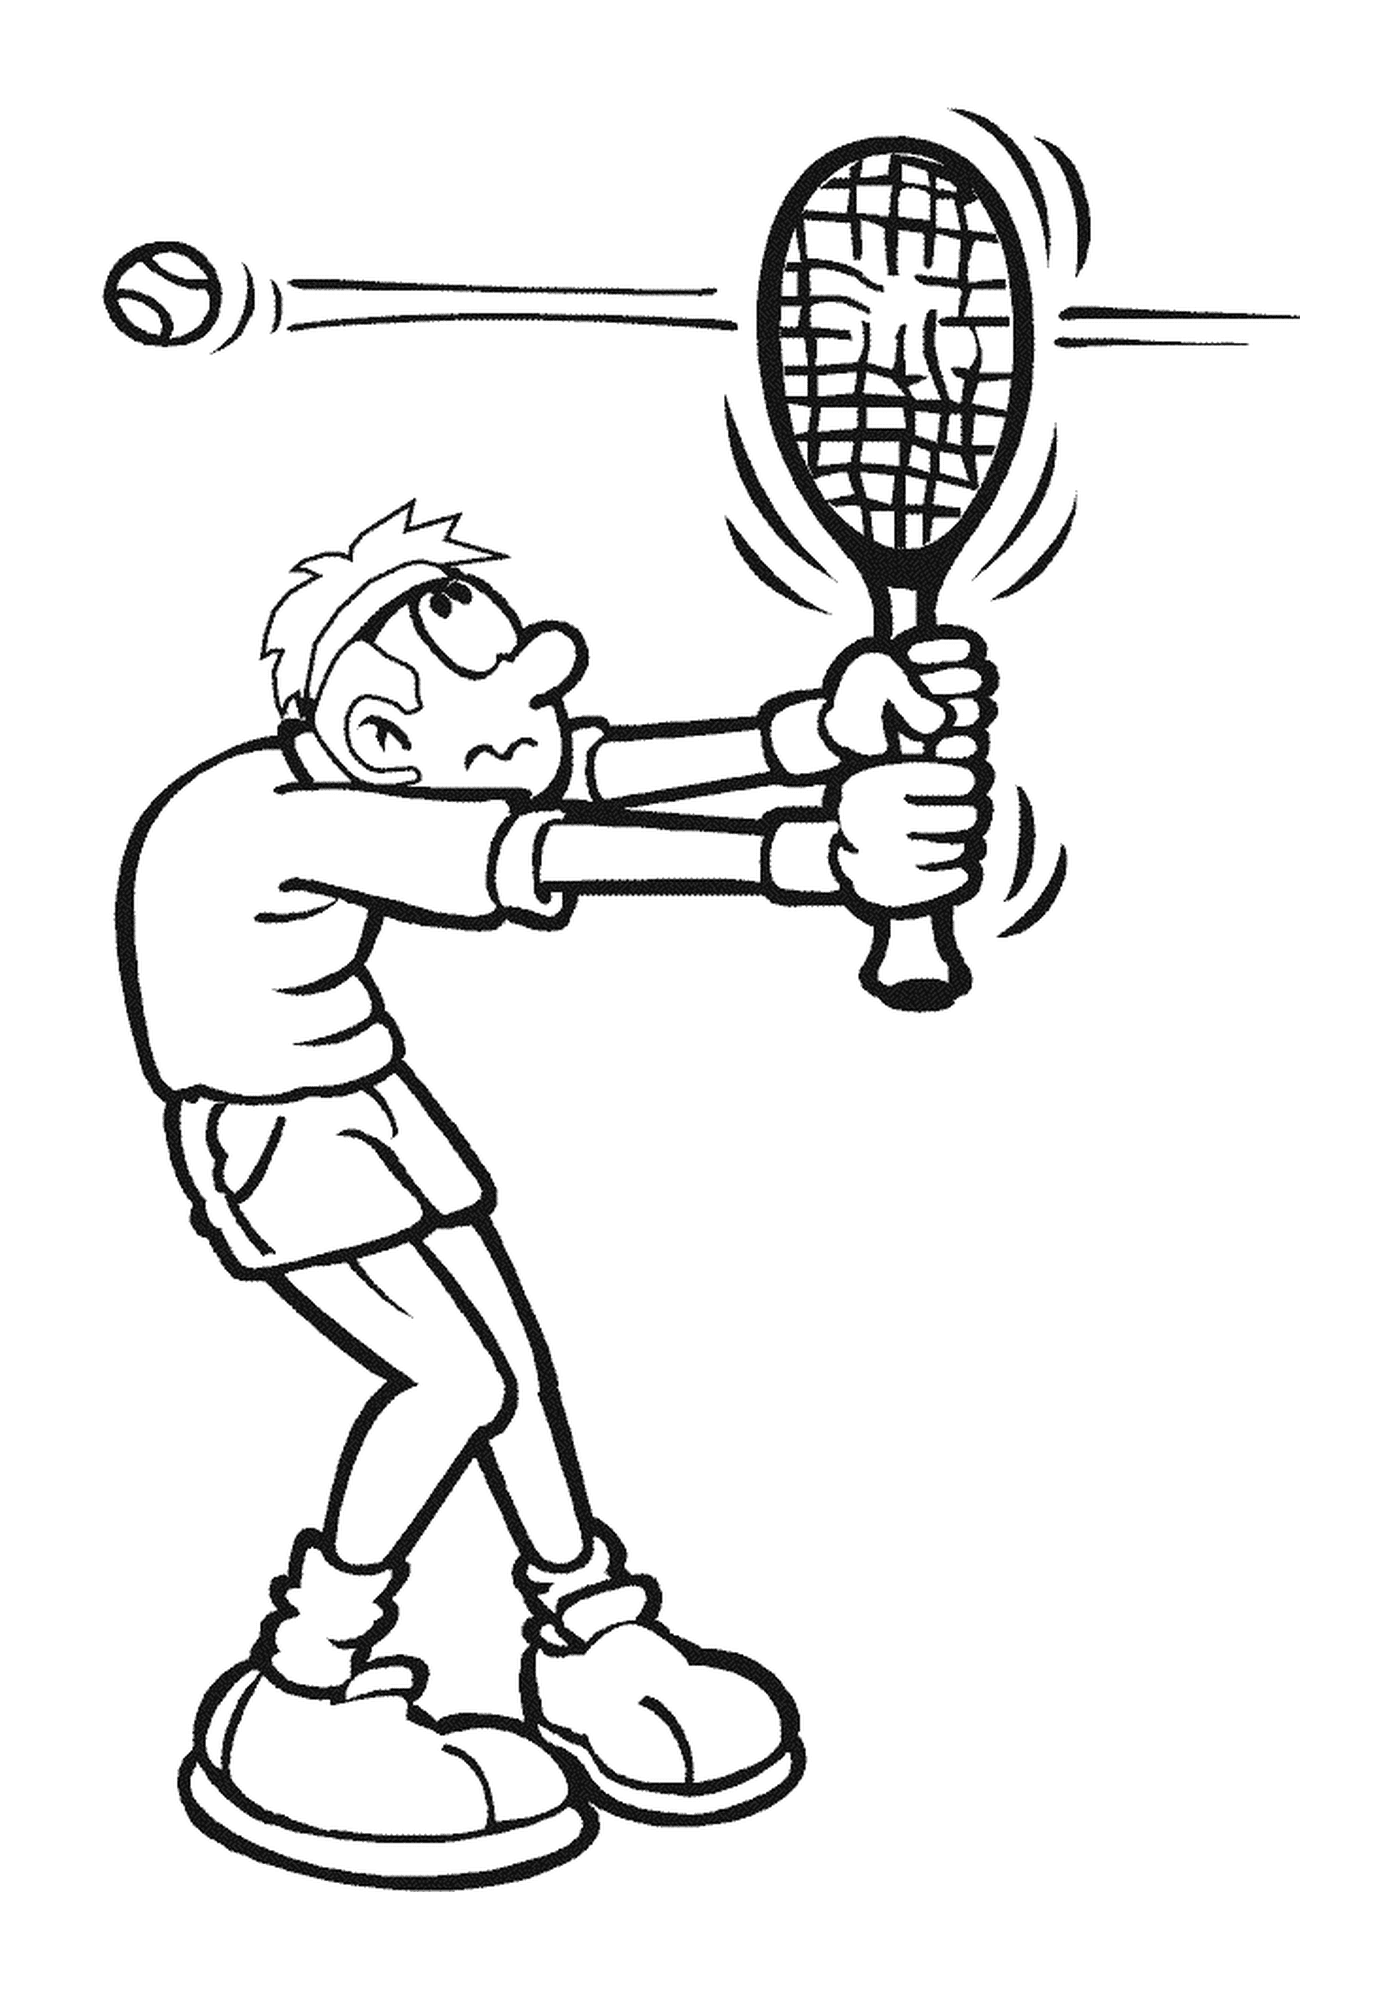 coloriage la balle tennis transperce la raquette du joueur